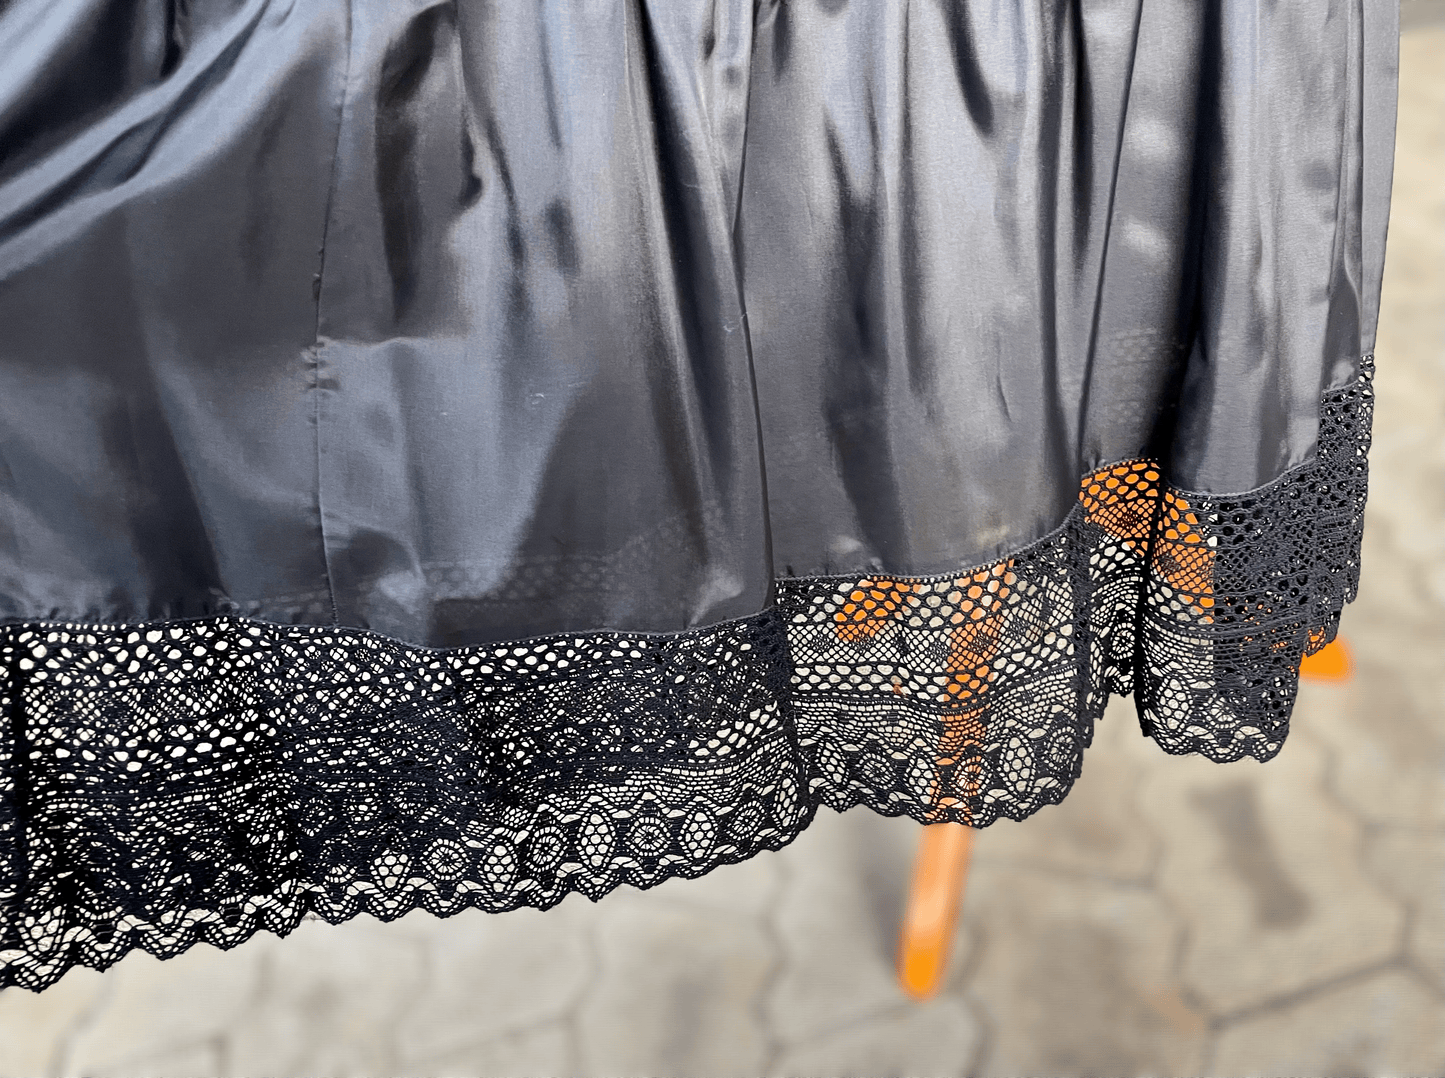 Petticoat, Unterrock Edna 95 cm, schwarz, Spitze Unterrock Sportalm 